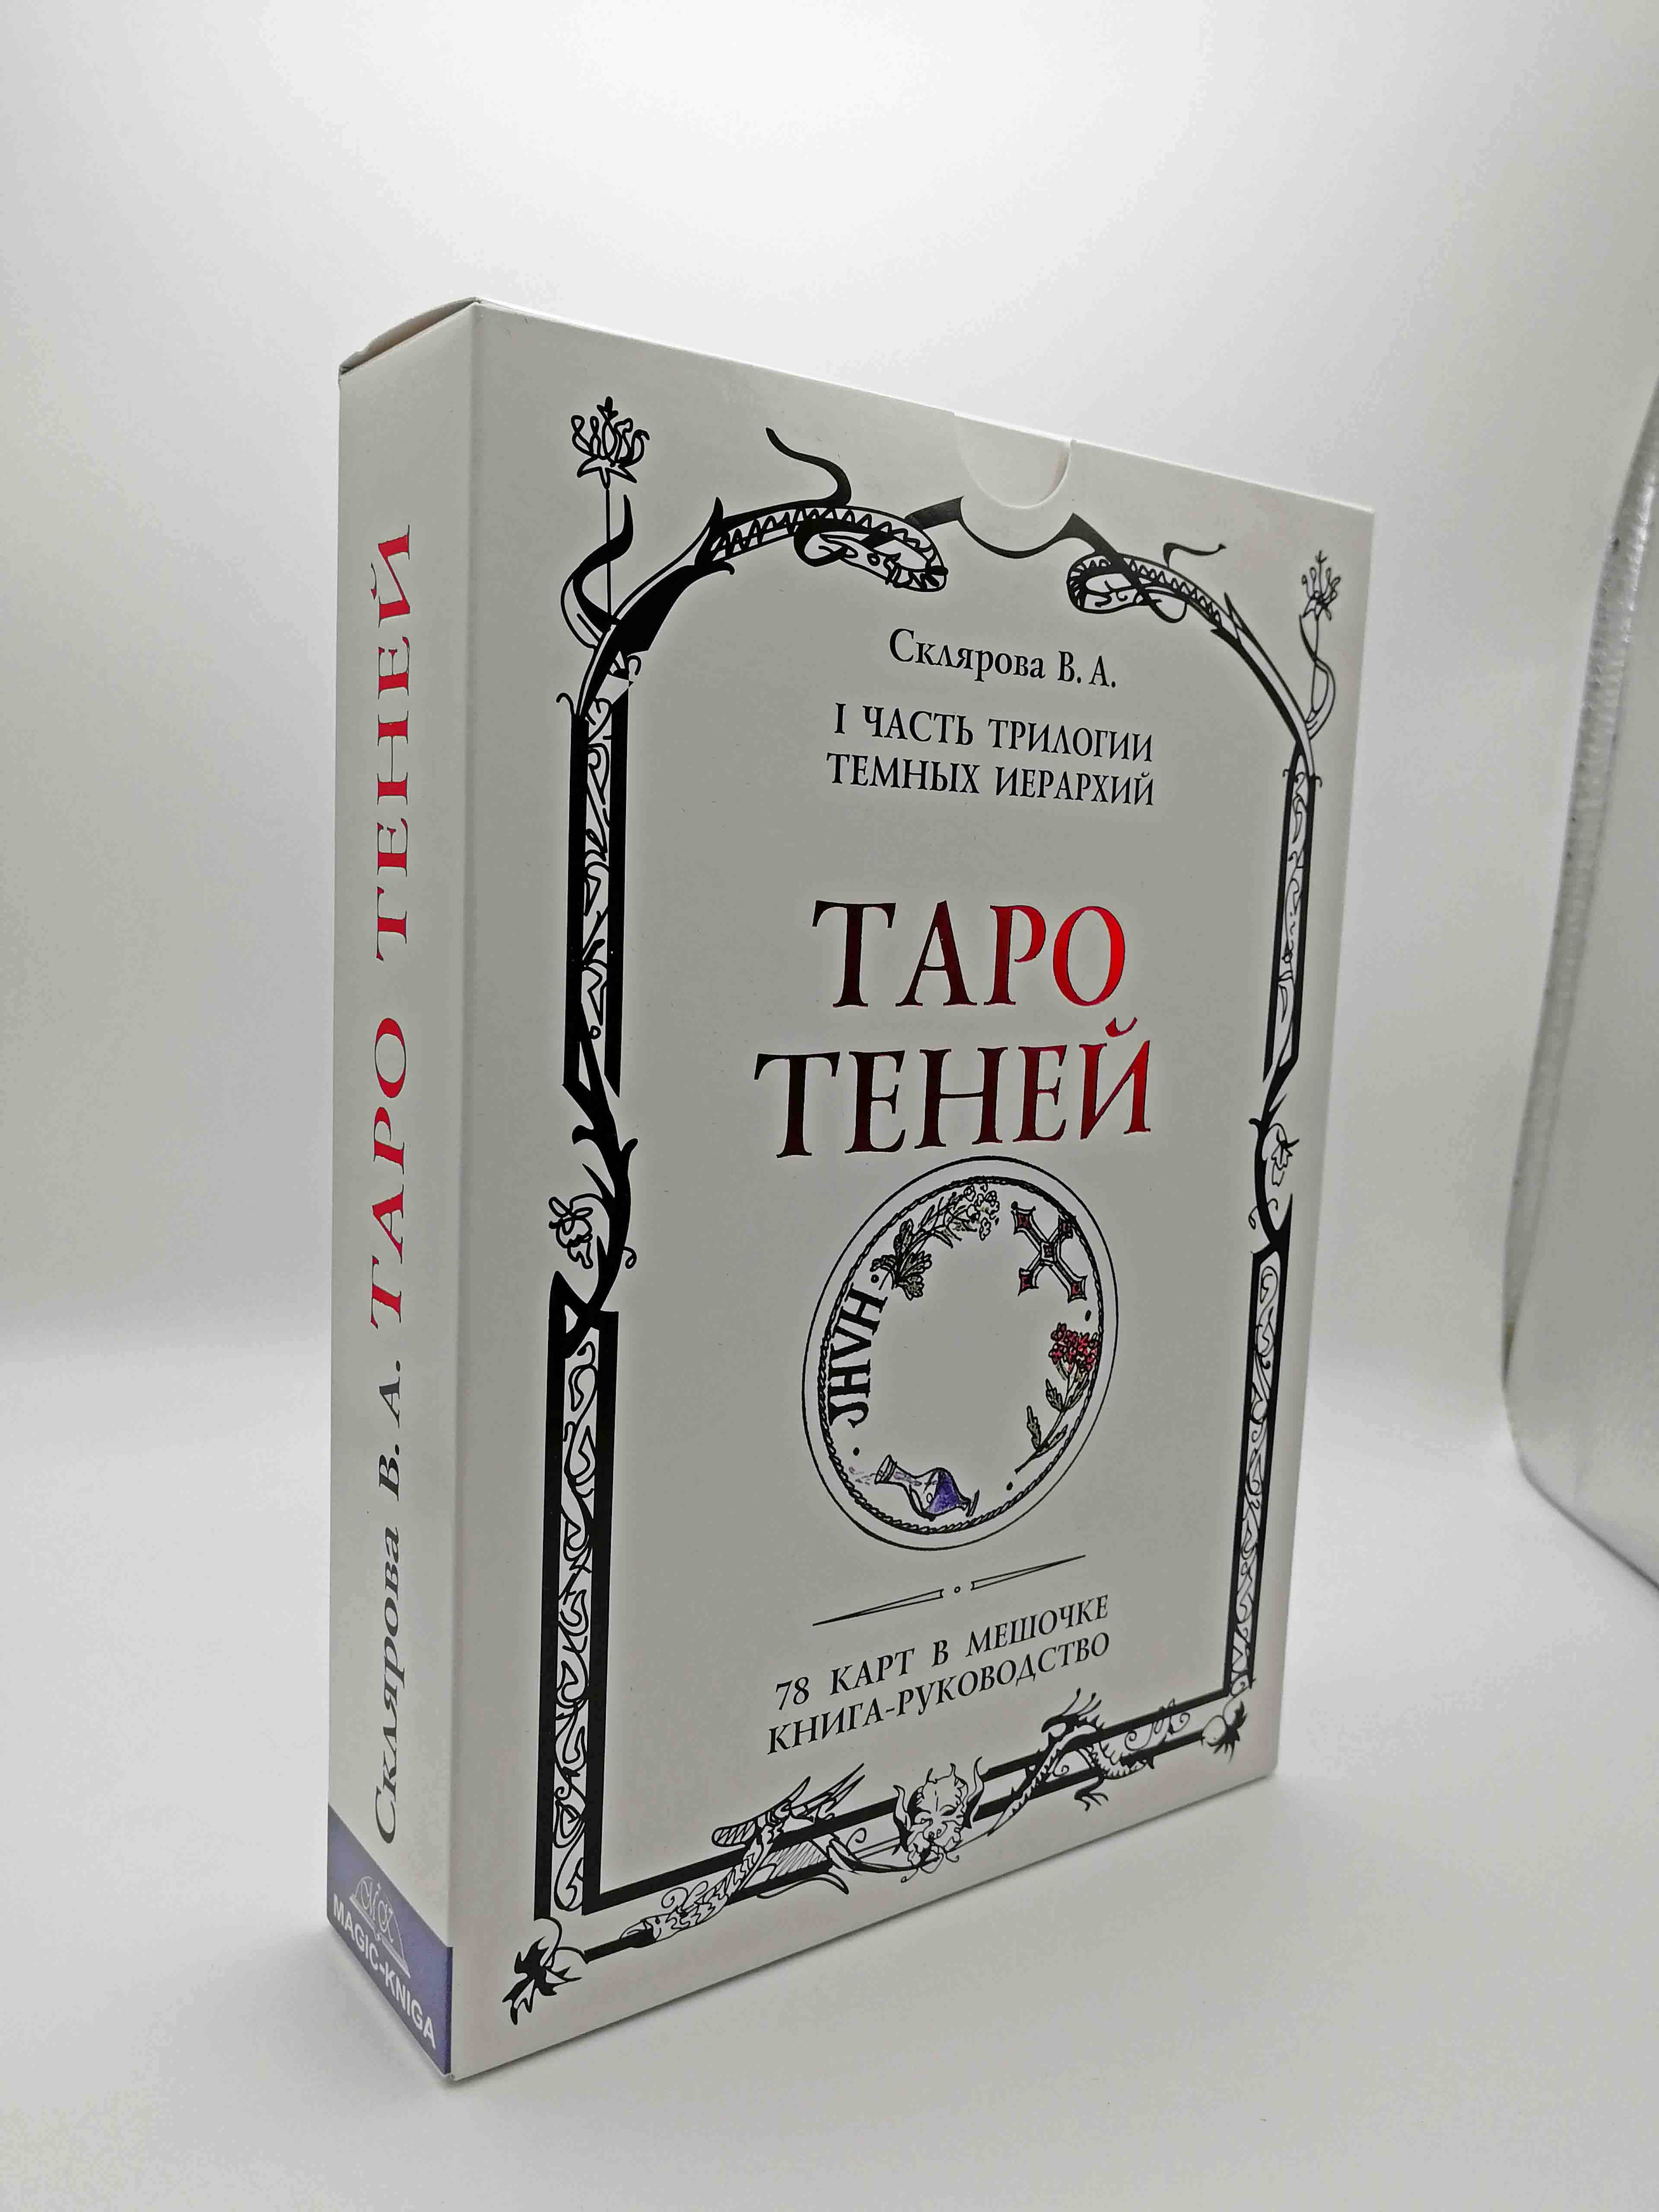 Таро Теней - обзор и описание колоды, особенности и уникальность, толкование значений карт